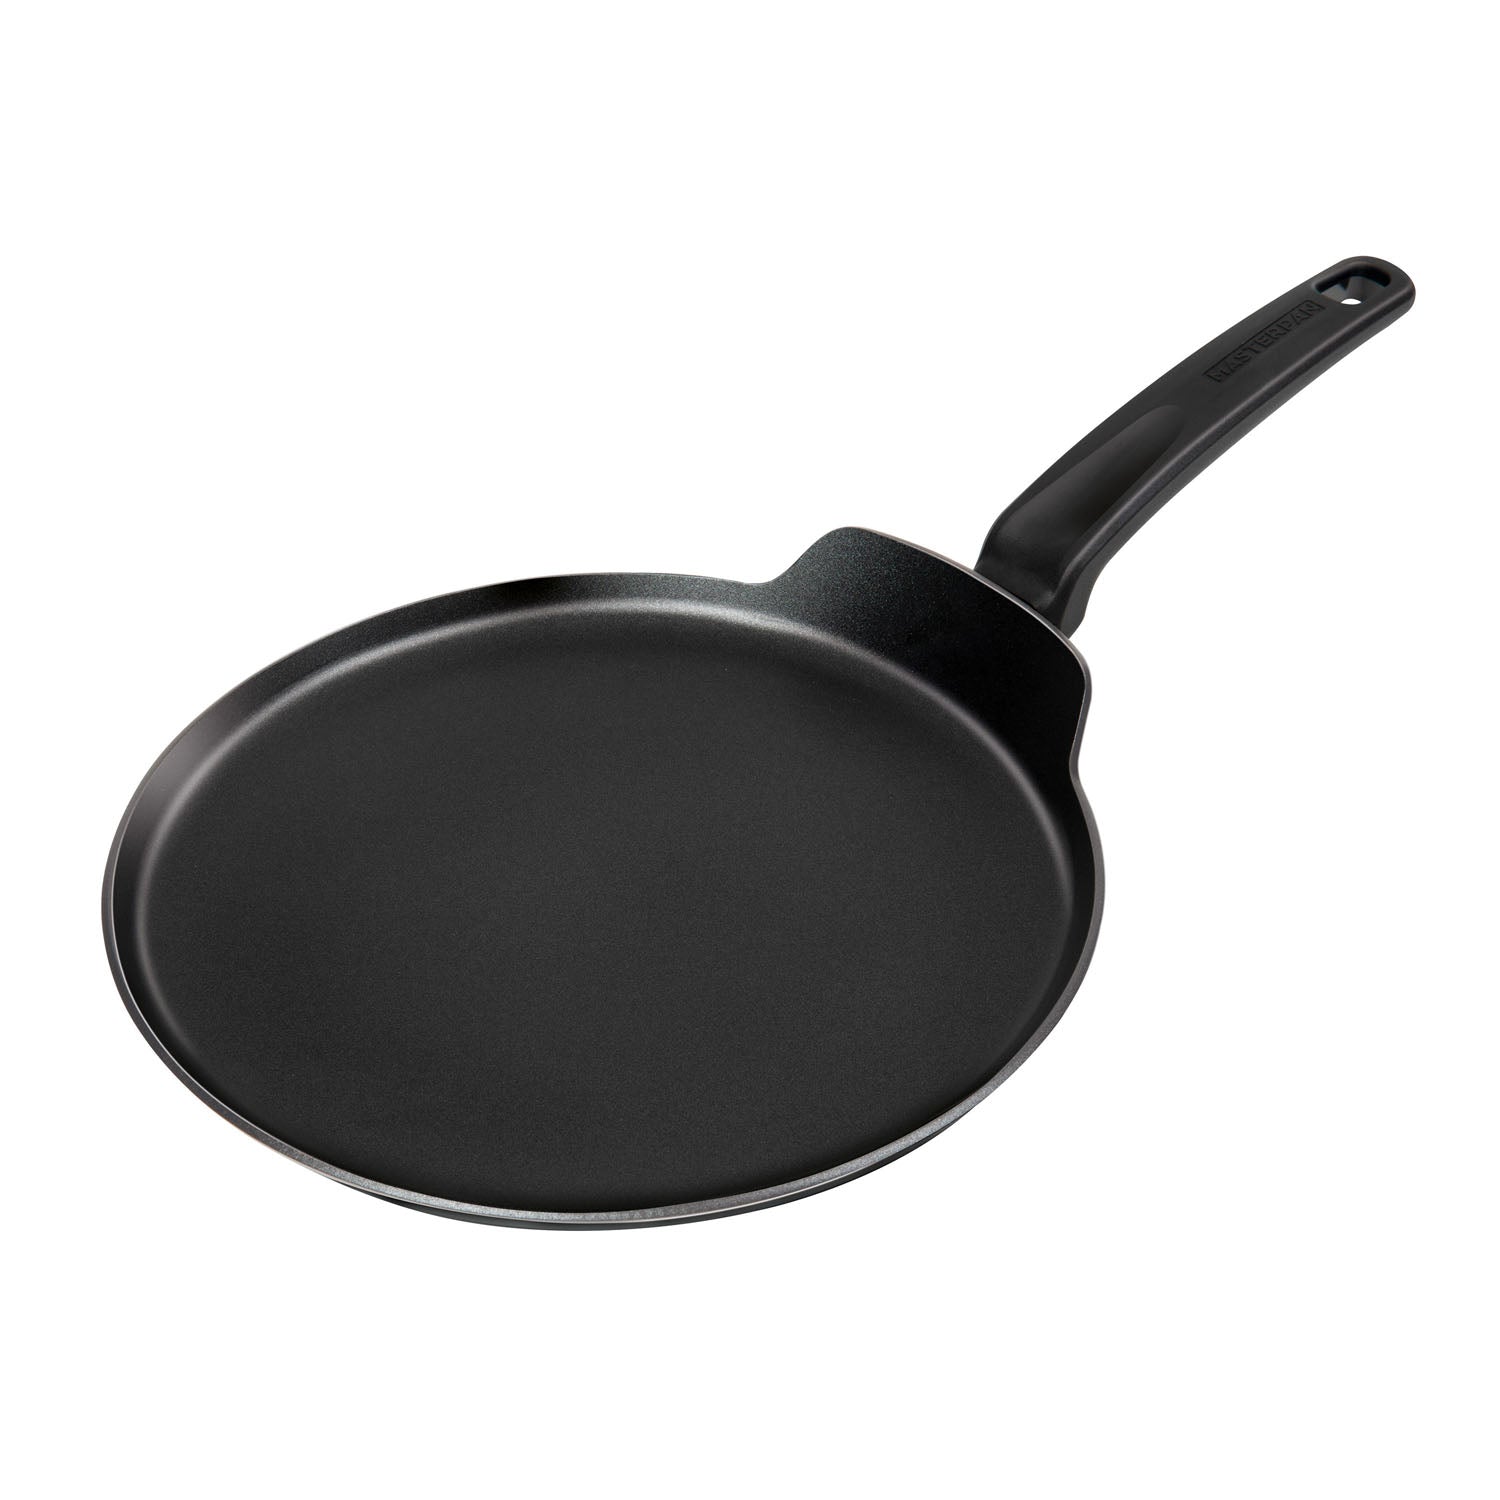 Tefal Elegance Aluminium Crepe Pan, Aluminium, Black, 43 x 25,8 x 5,5 cm